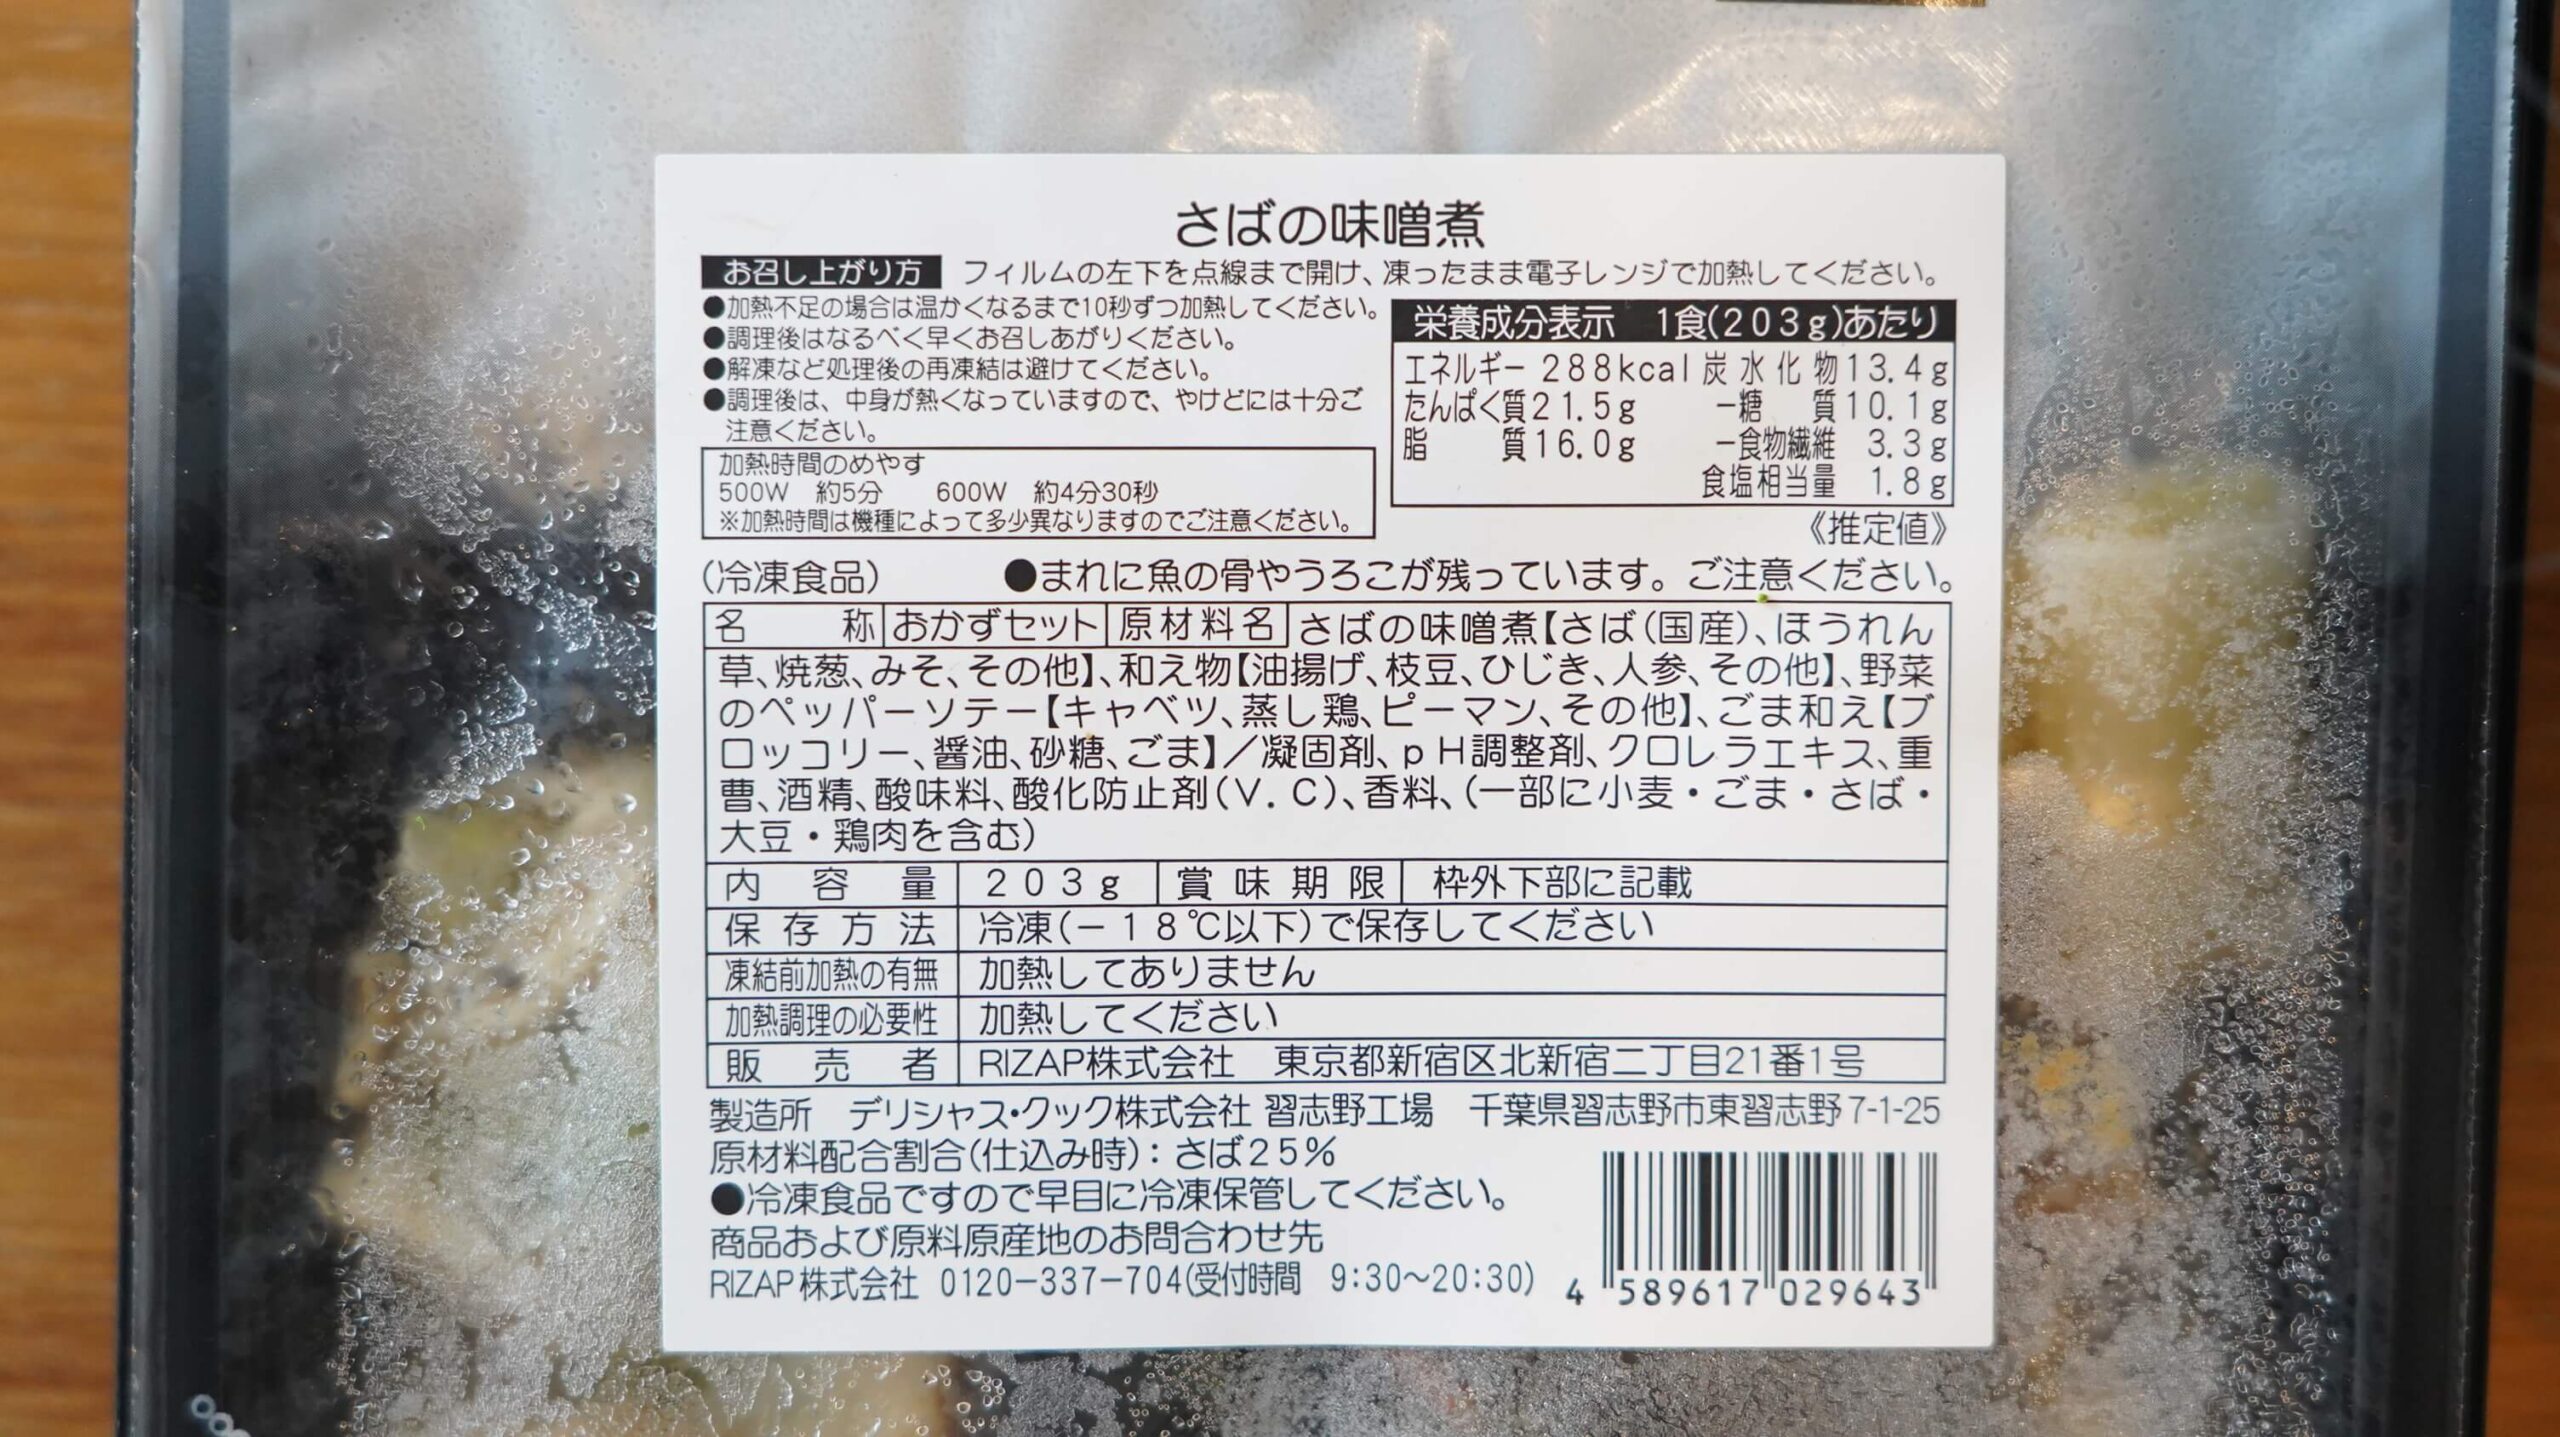 ライザップのサポートミール「さばの味噌煮」の商品情報の写真